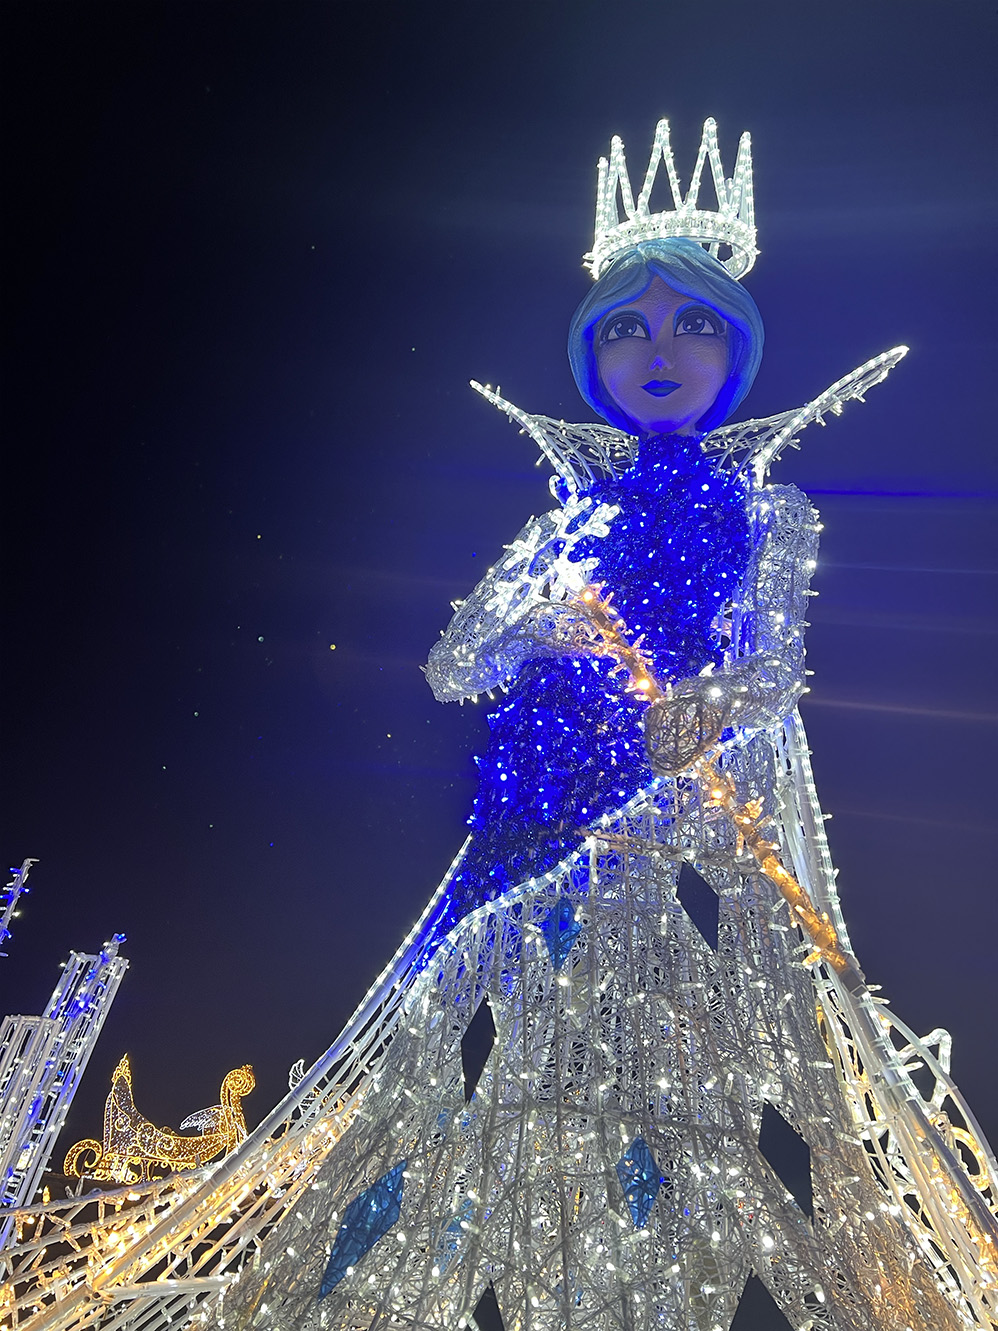 Jedes Jahr in der Winterzeit kommt „Ella – Die Schneekönigin“ und ihr wunderschönes Gewand aus weiß – blauen Samt, bestückt mit zahlreichen glitzernden Brillanten aus Ihrem Schneeköniginnenschloss heraus, um sich euch zu zeigen.